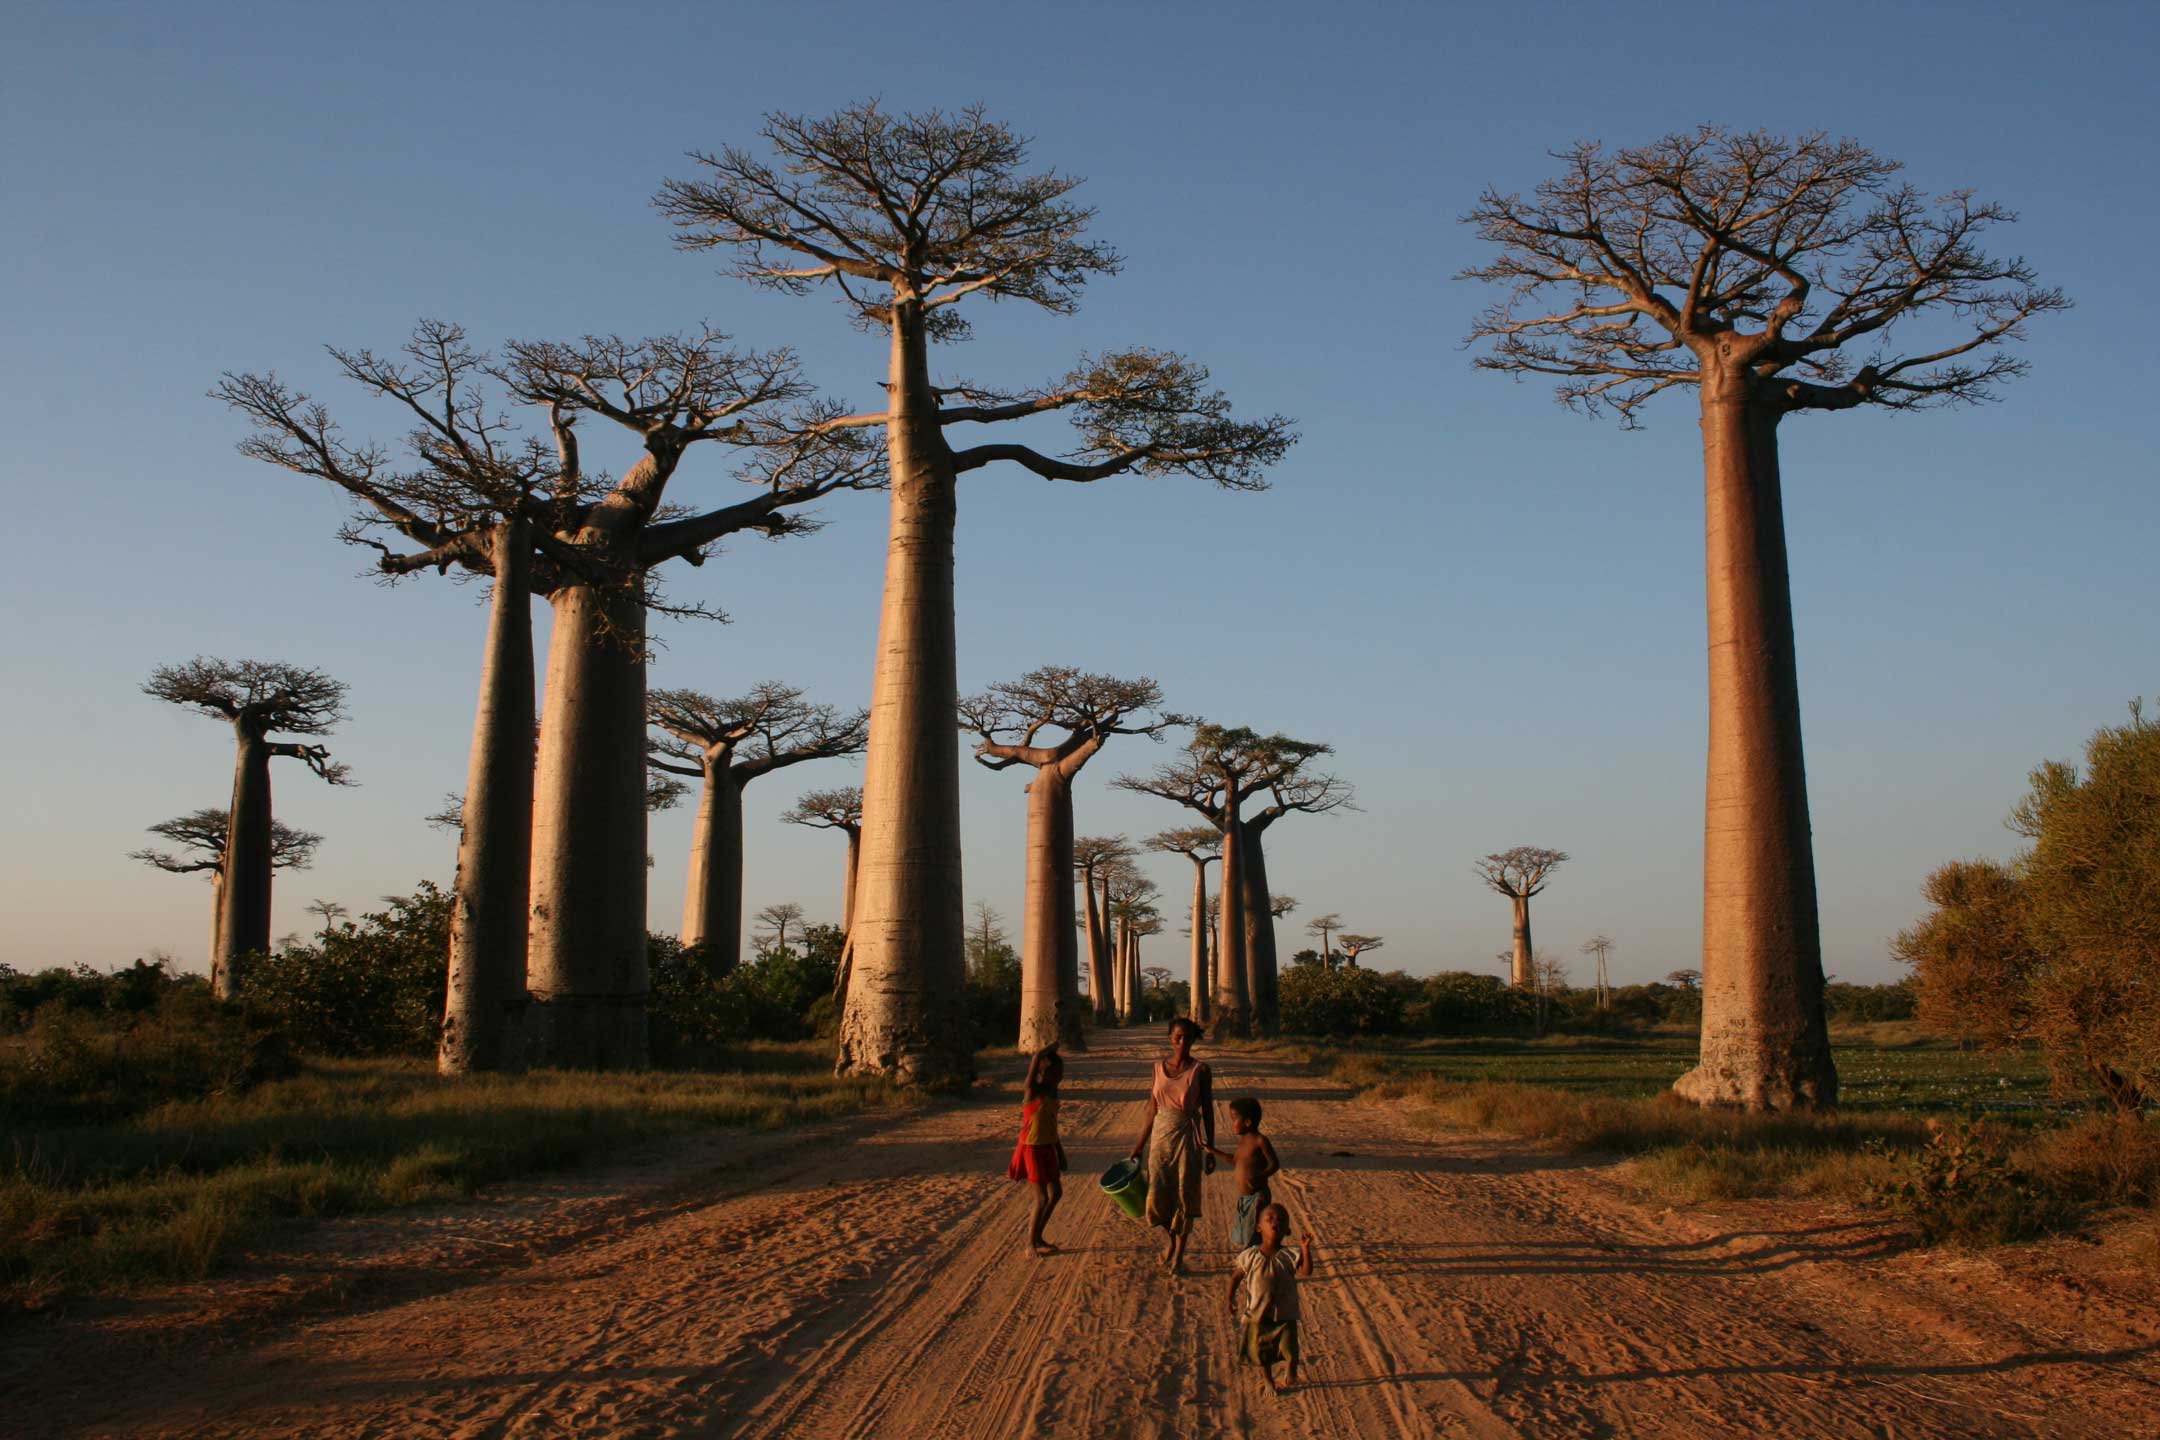 Tsingy – Baobab